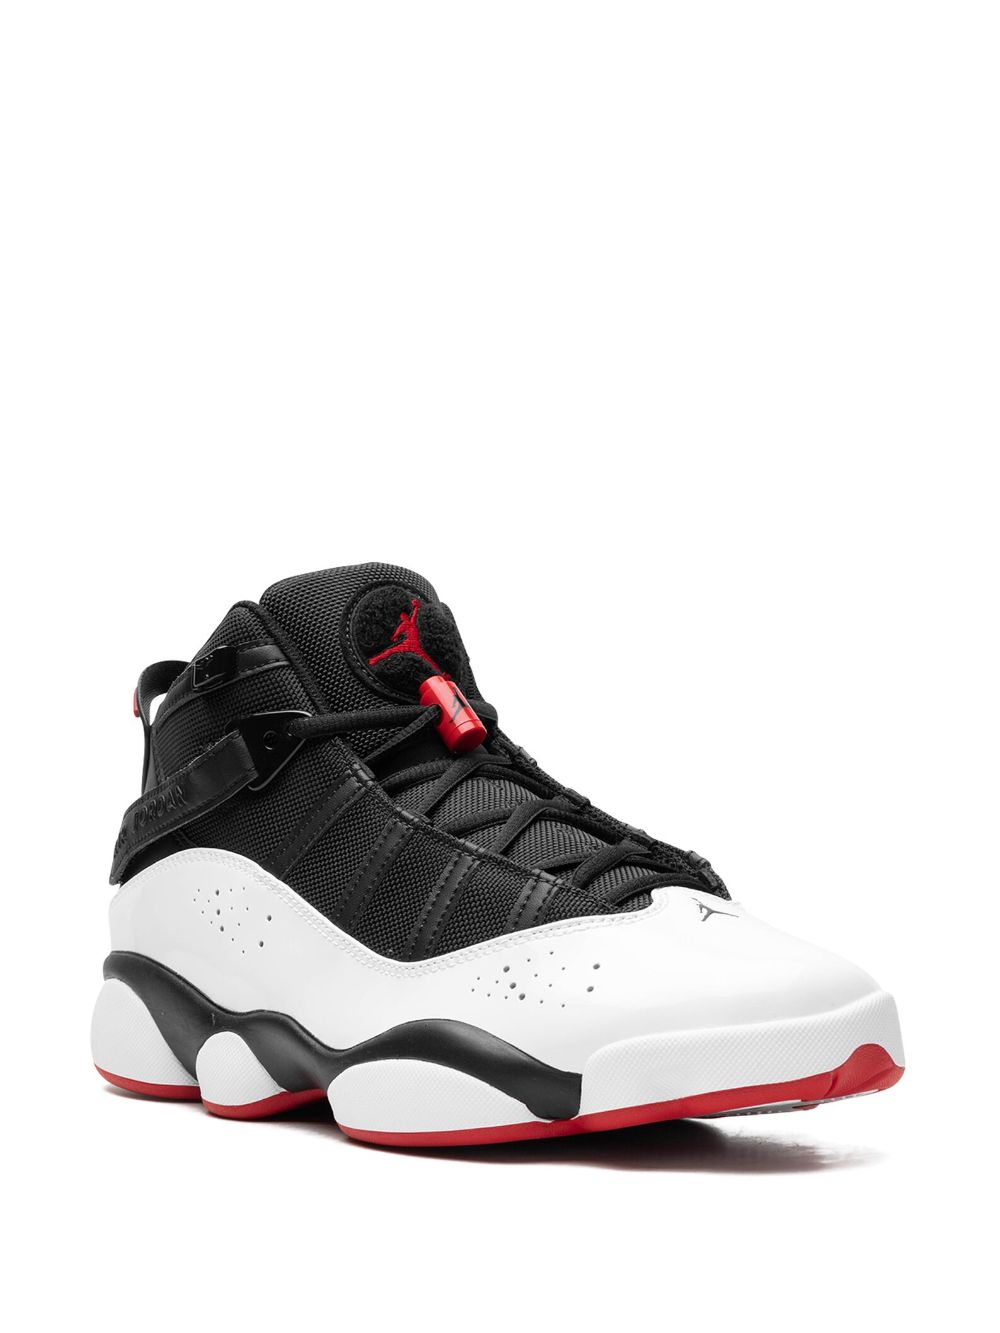 Image 2 of Jordan 6 Rings "Wht/Blk/Red" sneakers